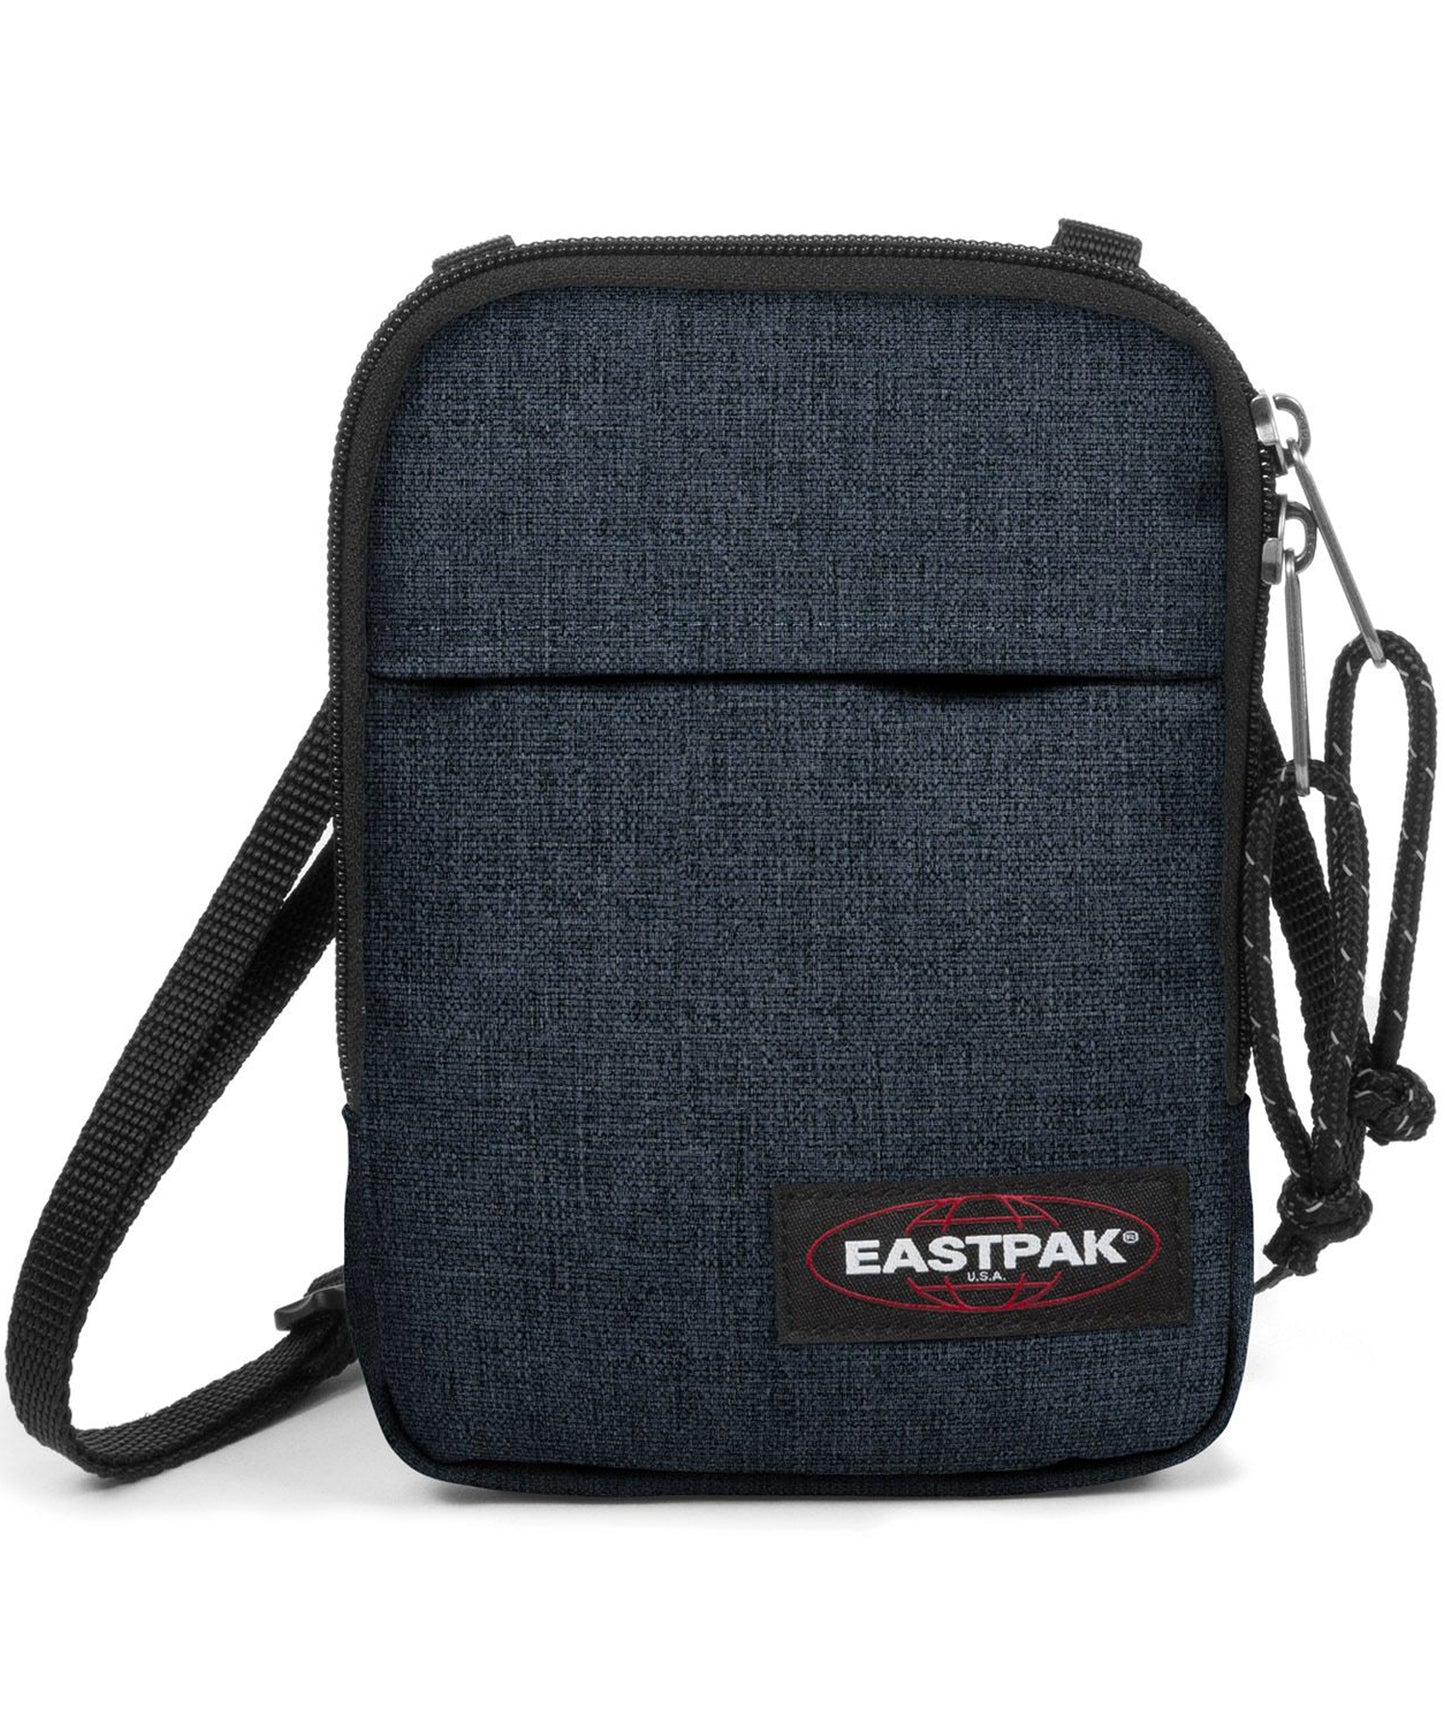 eastpak bolso buddy unisex tipo bandolera de color azul tejano oscuro-cierre con cremallera-y logo en la parte delantera